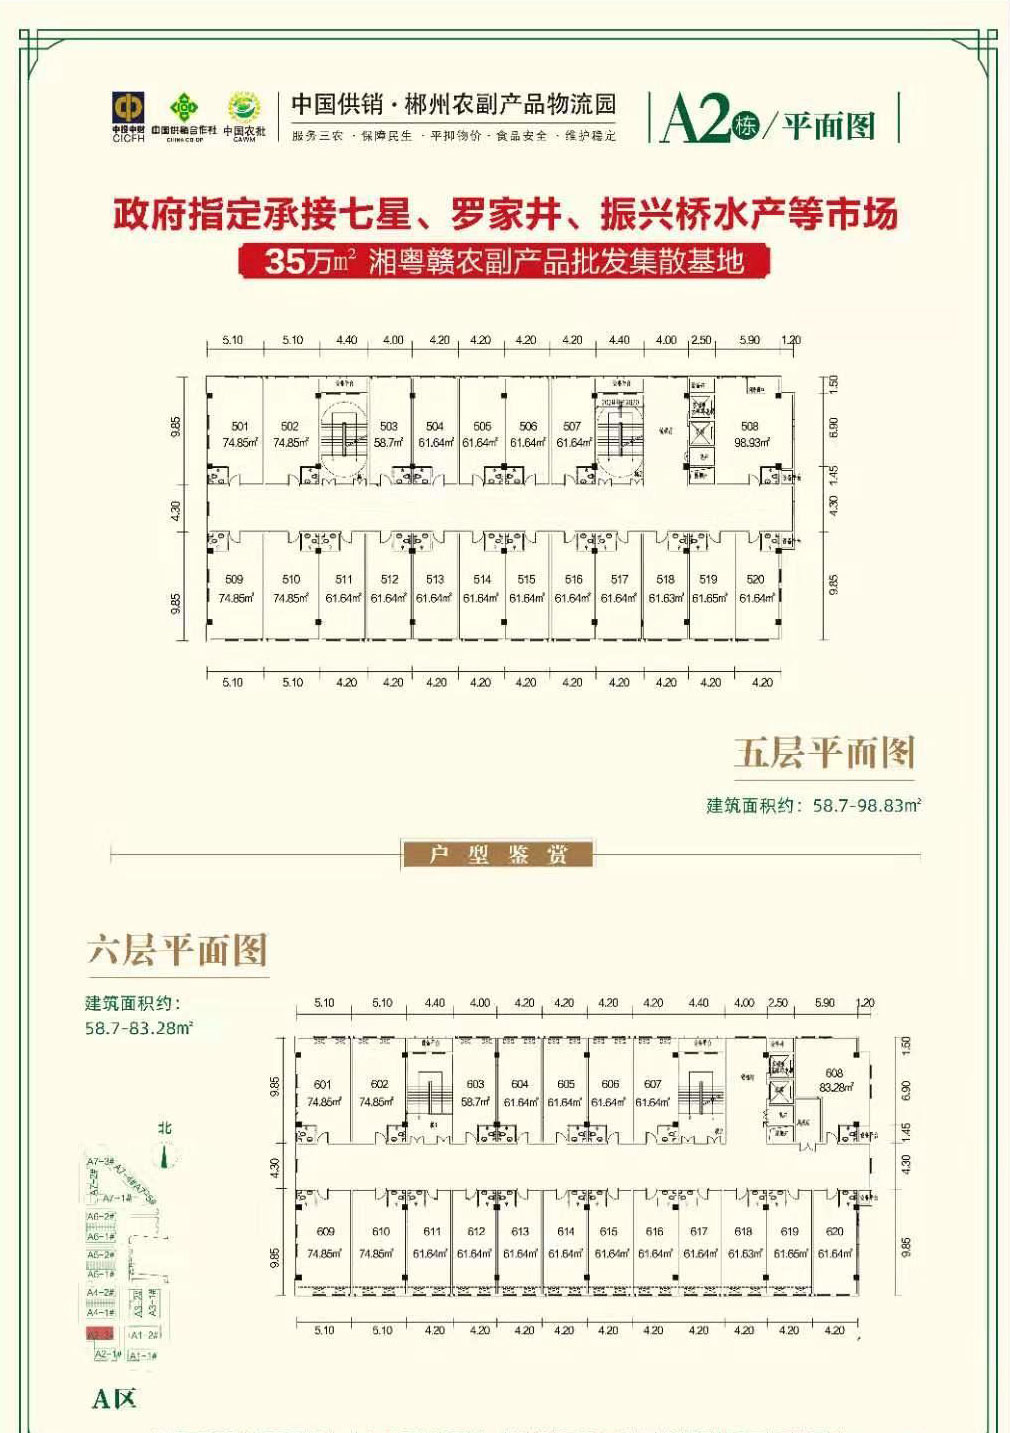 郴州北湖区农副产品物流园为您提供A2平面图5、6层图片详情鉴赏